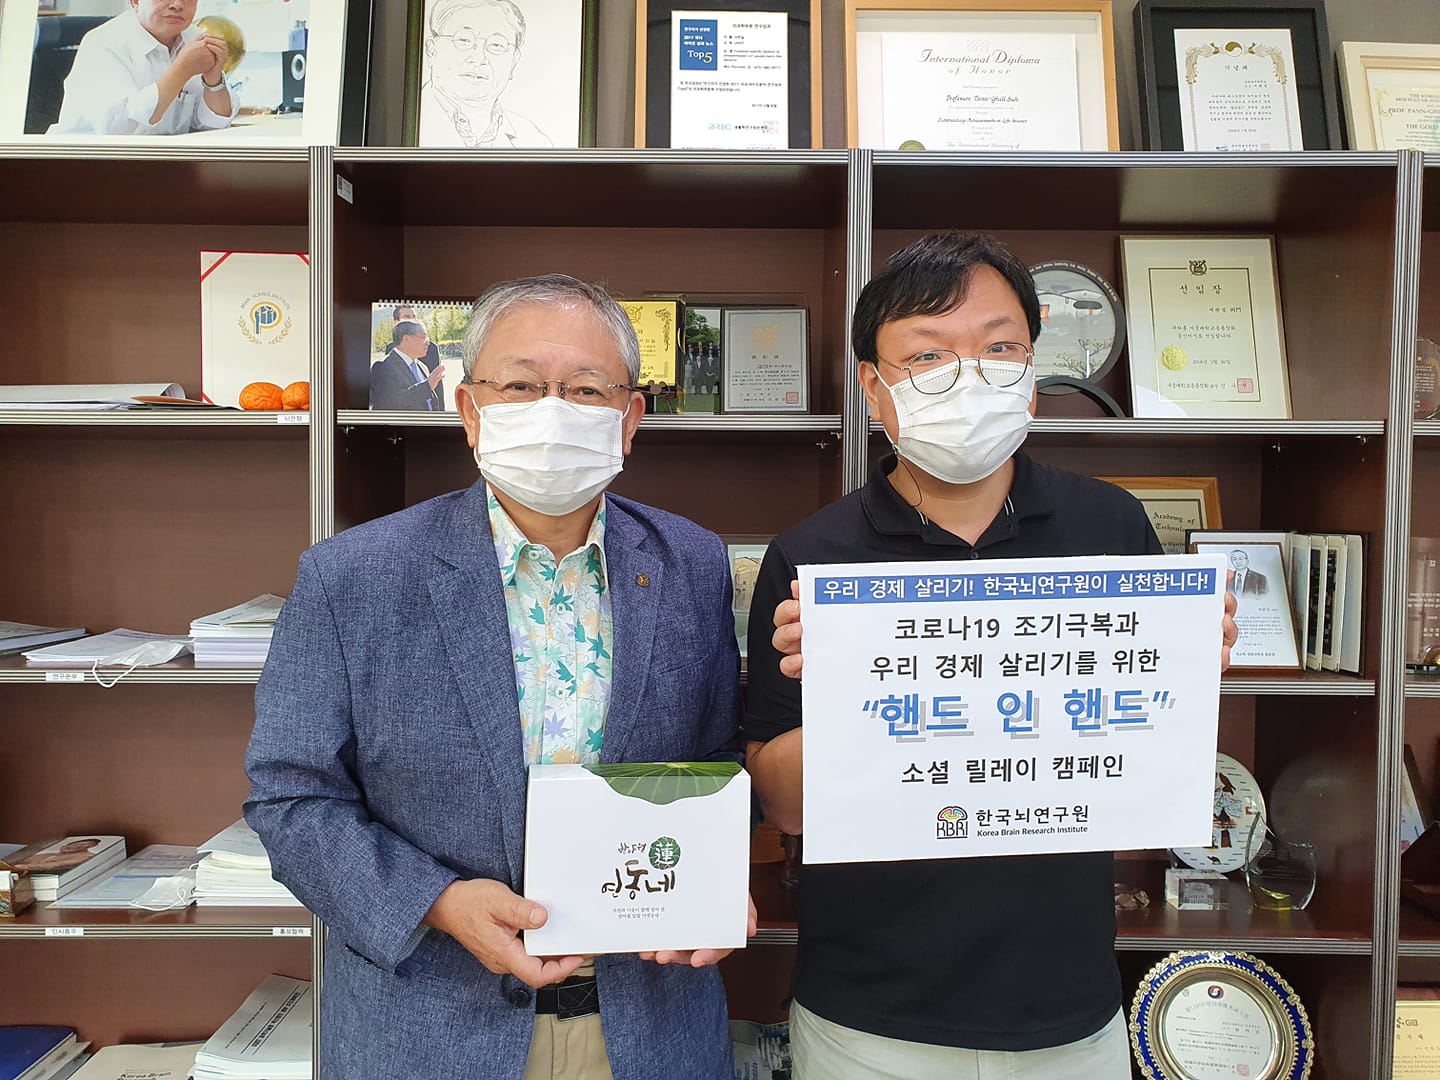 한국뇌연구원 우리 경제 살리기 캠페인 「핸드 인 핸드」참여